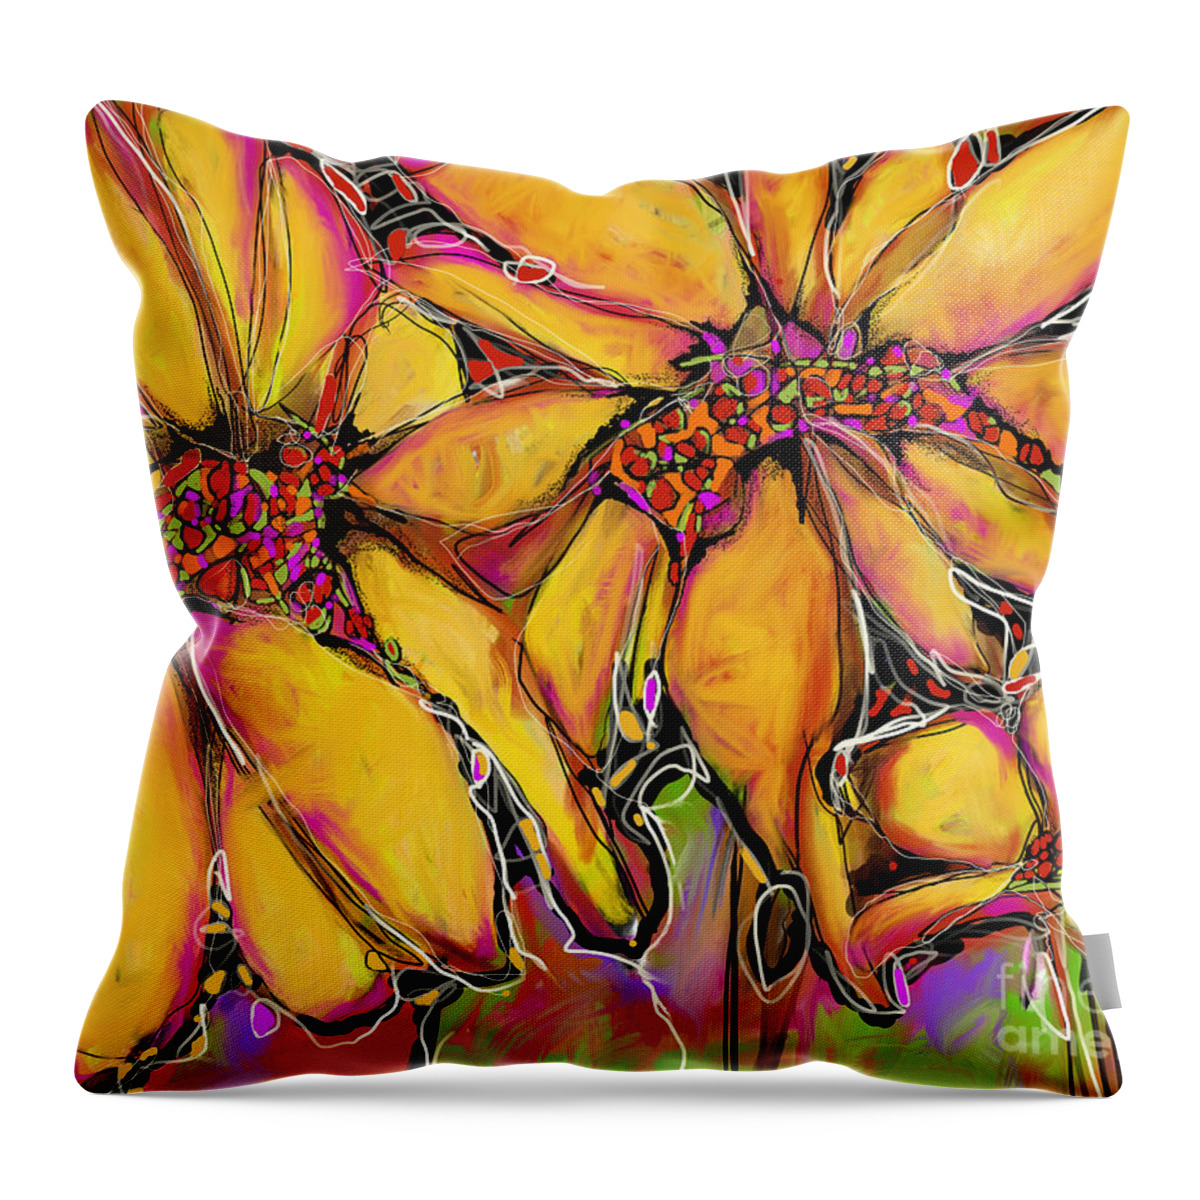 Sunflower Throw Pillow featuring the digital art Magic Sunflower by Robin Valenzuela